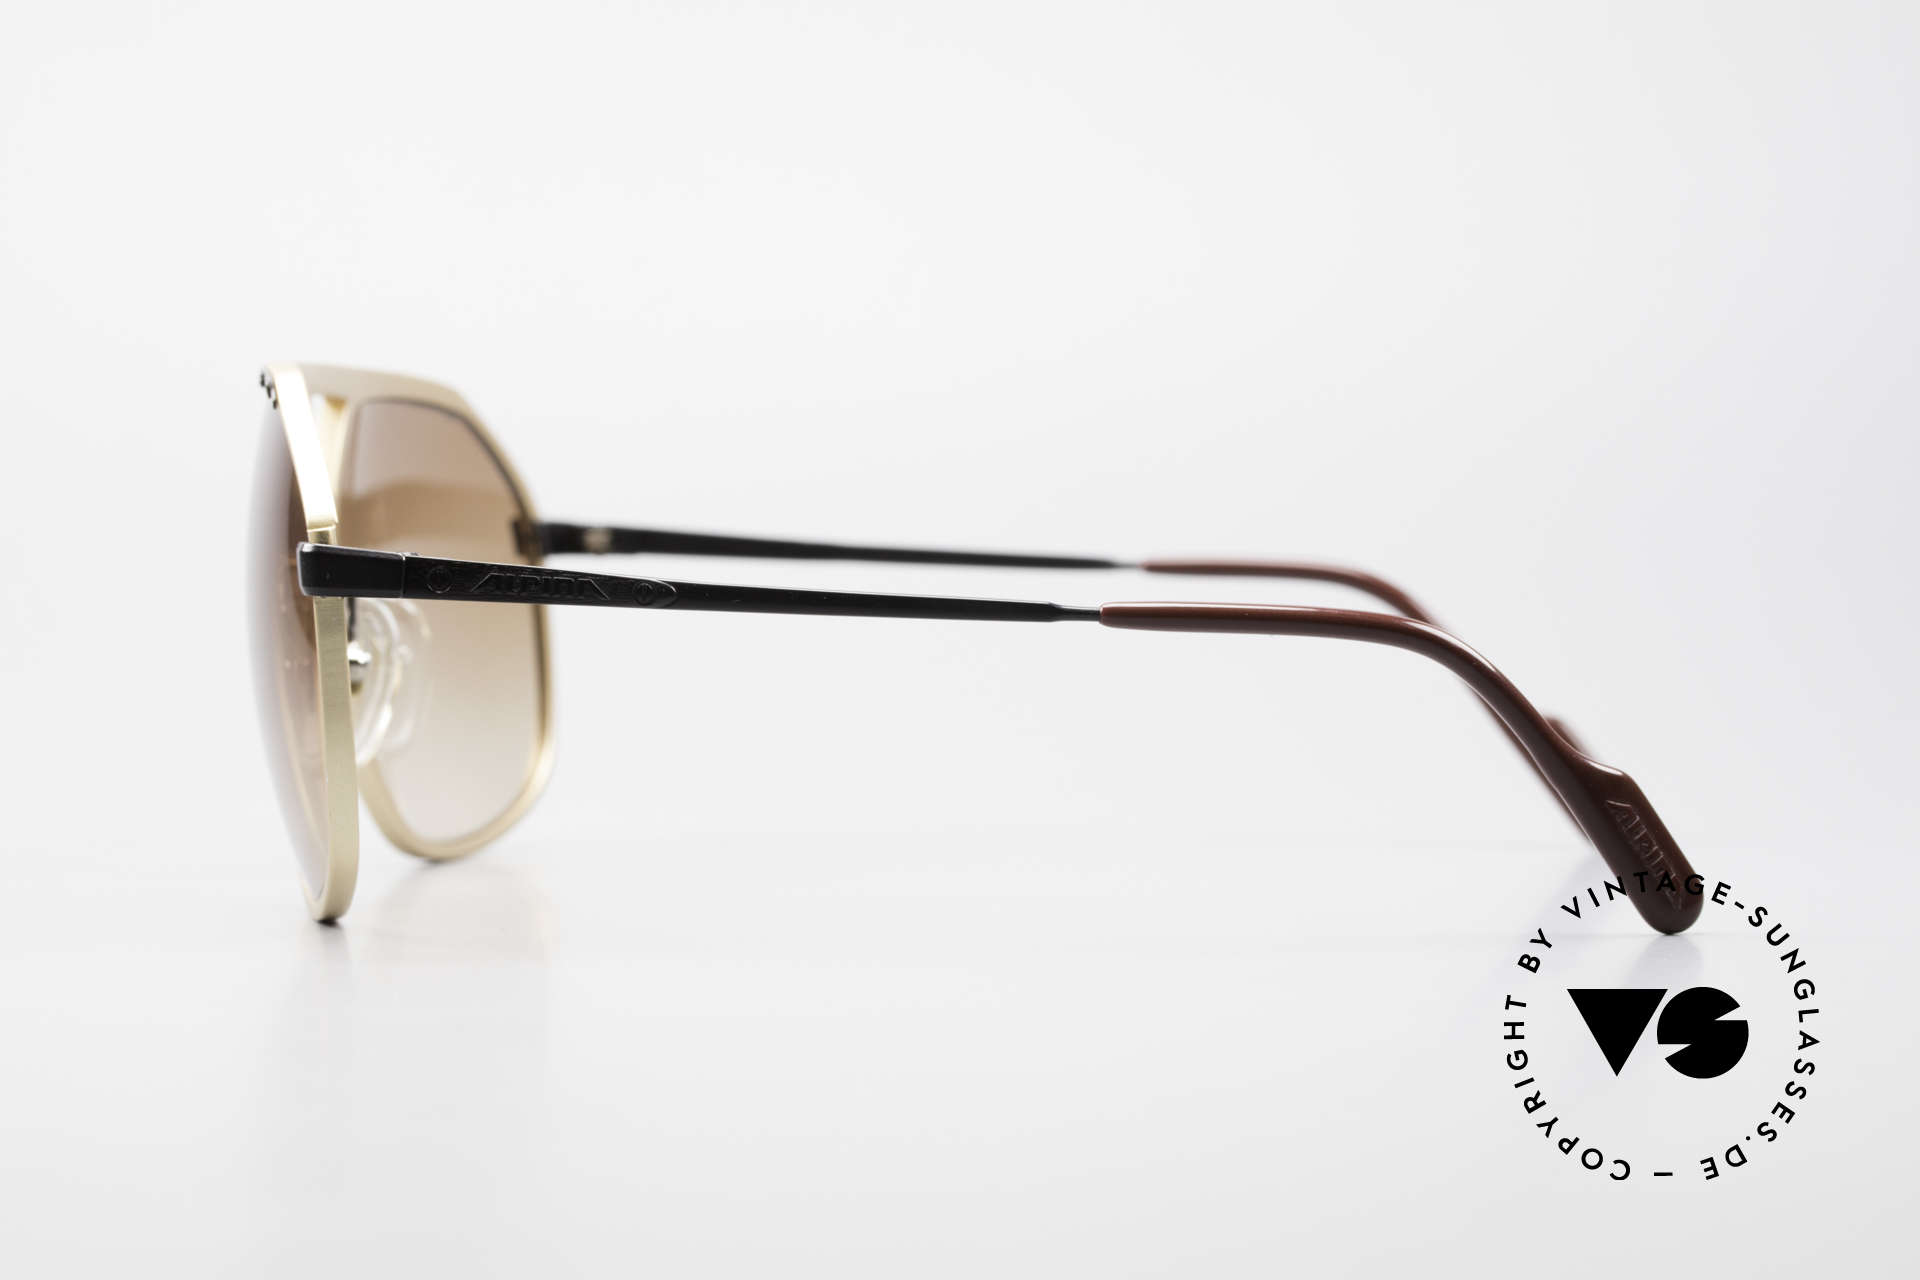 Alpina M1/7 Nachfolger der Alten M1 Brille, ungetragenes Modell kommt mit einem Etui von Bvlgari, Passend für Herren